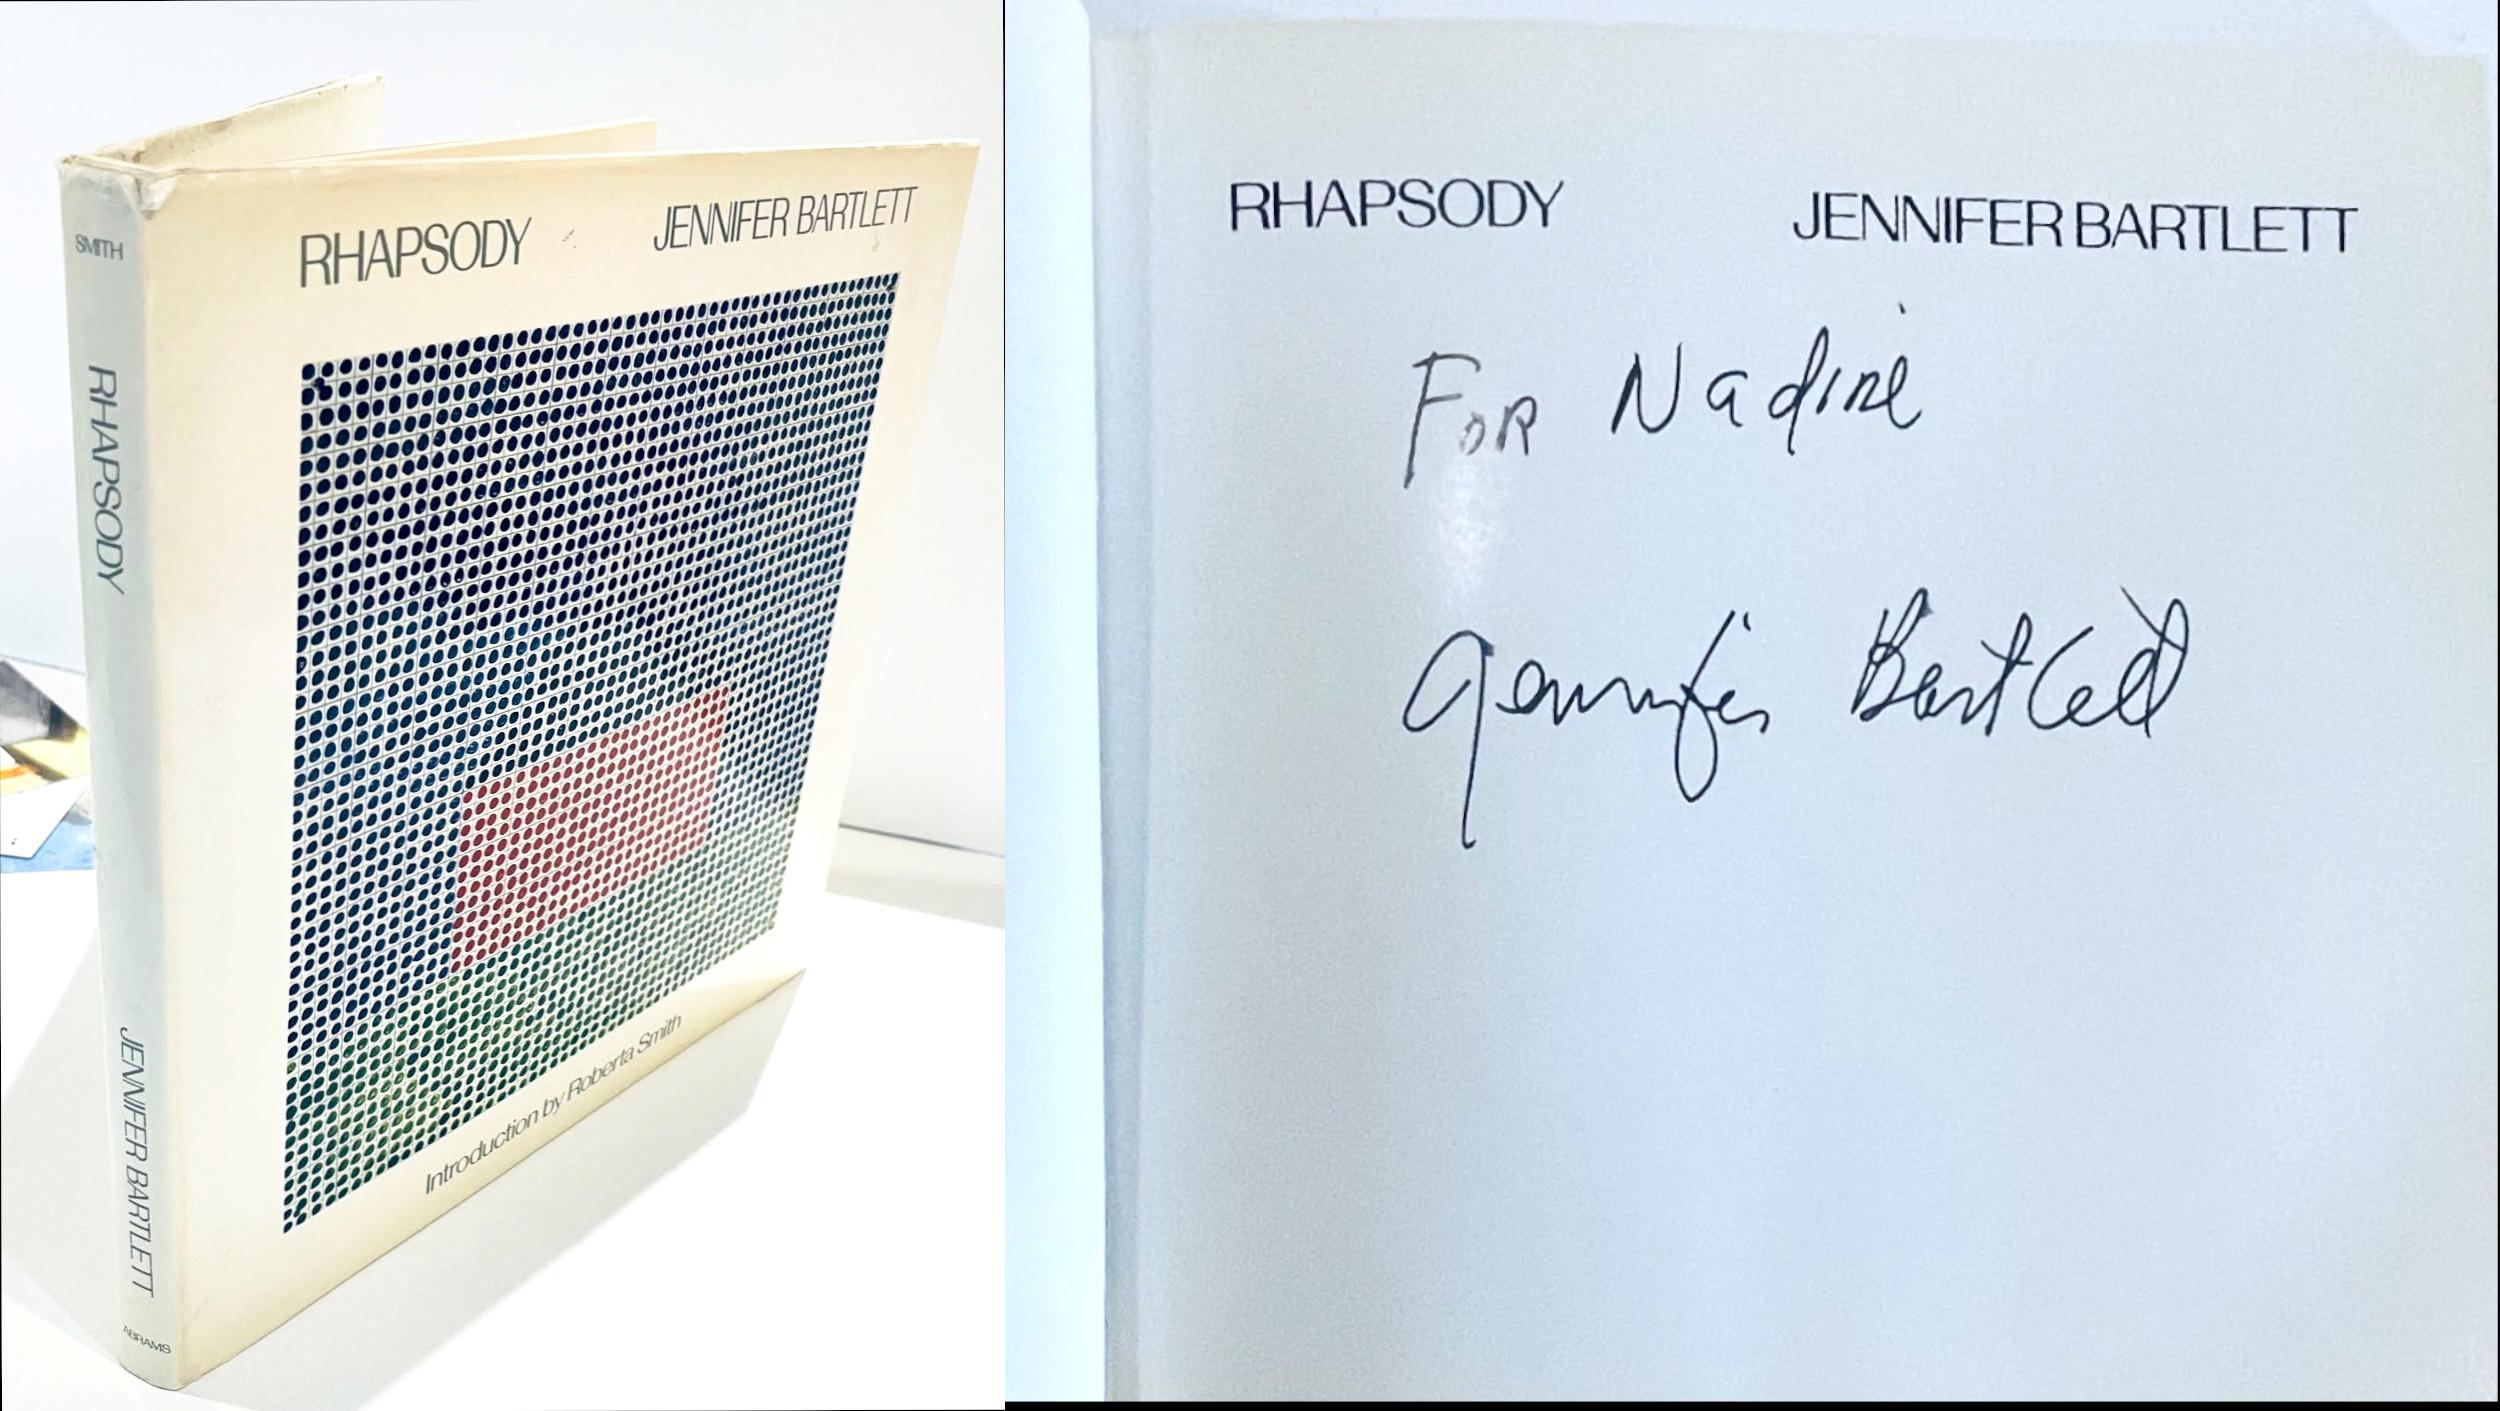 Jennifer Losch Bartlett
Rhapsodie (signé et inscrit à la main), 1985
Monographie reliée avec jaquette (signée à la main et dédicacée à Nadine).
Signé à la main et inscrit au marqueur noir "for Nadine" par Jennifer Bartlett sur la demi-page de